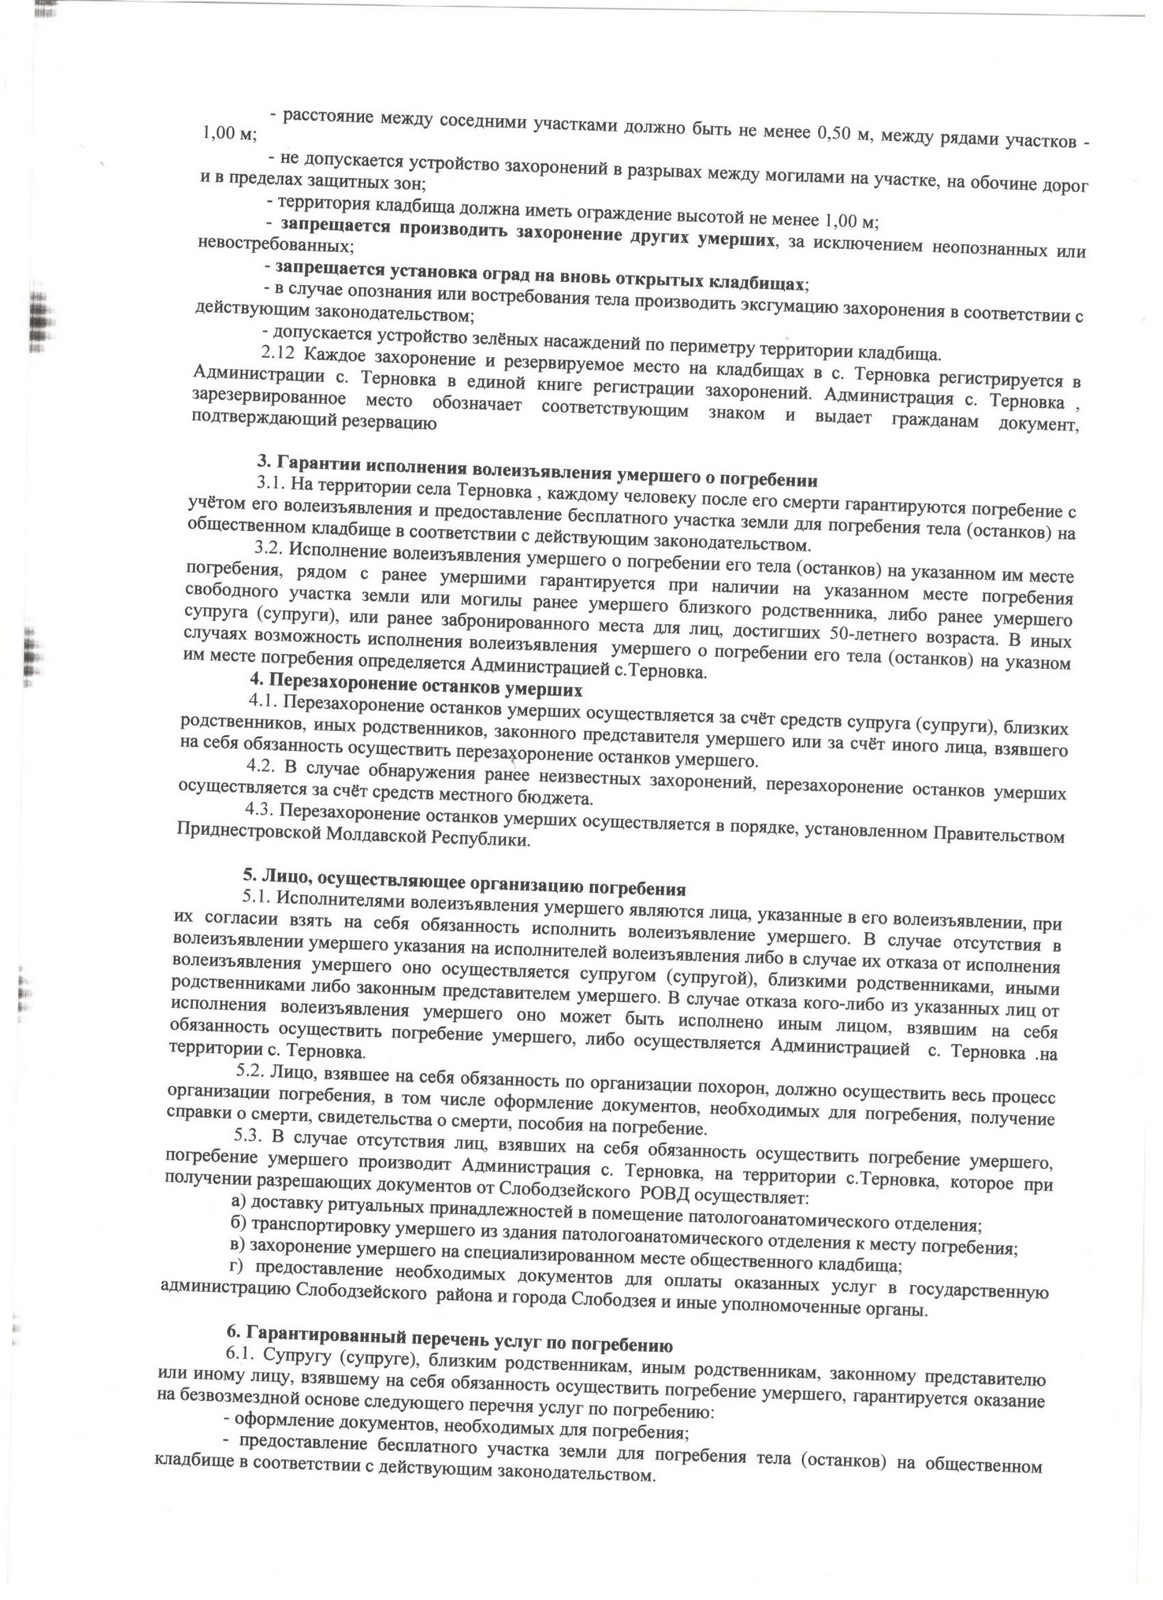 Процедура организации похоронного дела в Российской Федерации.. Организация похоронного дела